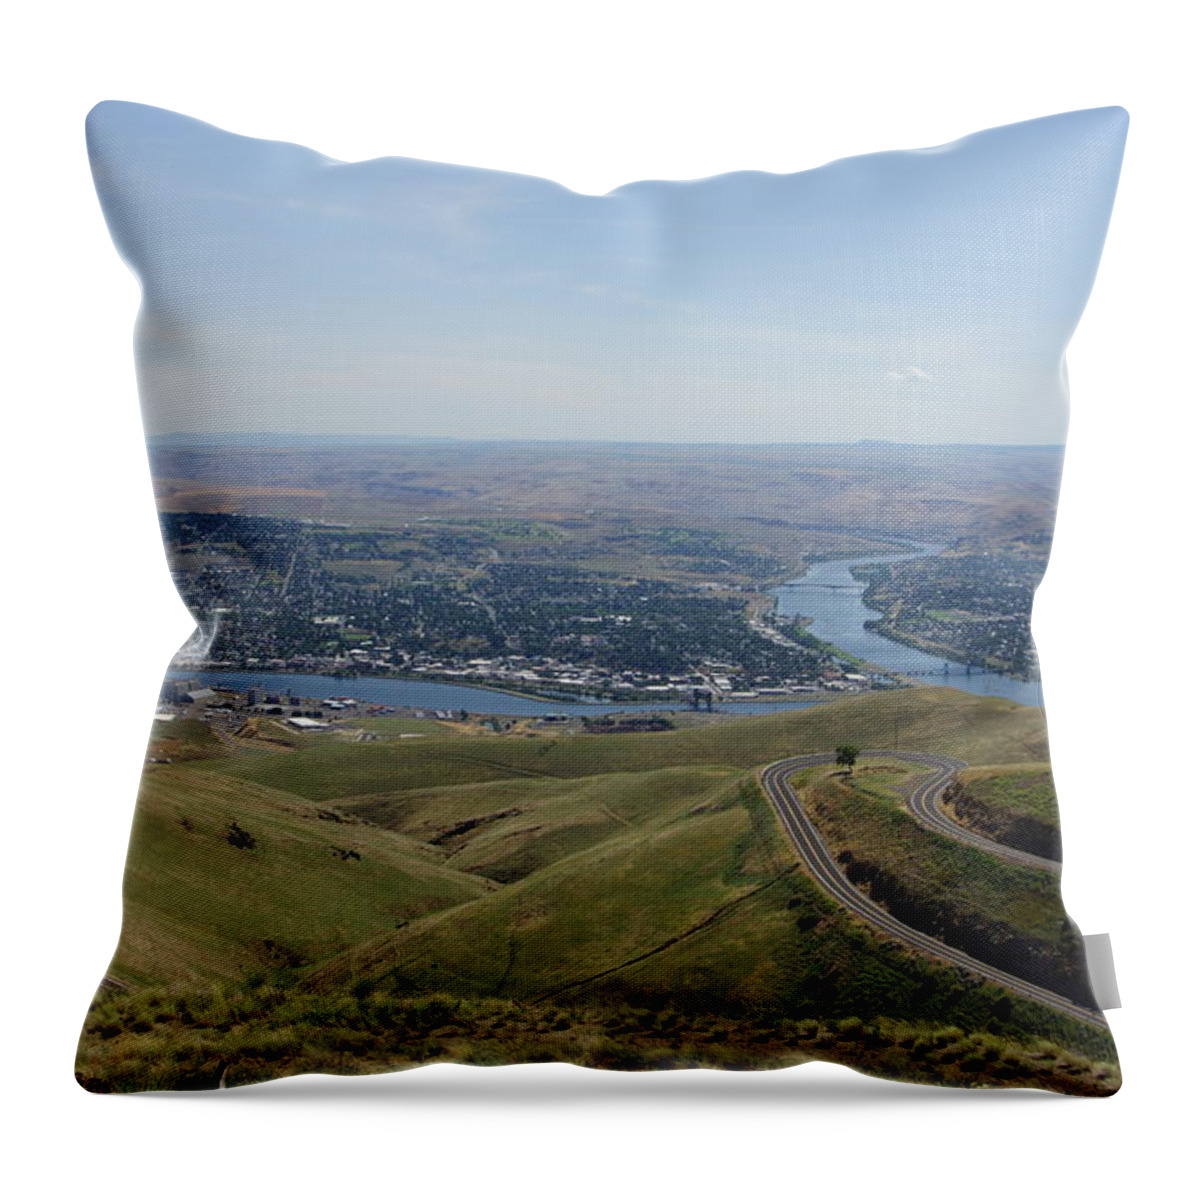 Lewiston Idaho Throw Pillow featuring the photograph Lewiston Idaho and Clarkston Washington by Ron Roberts